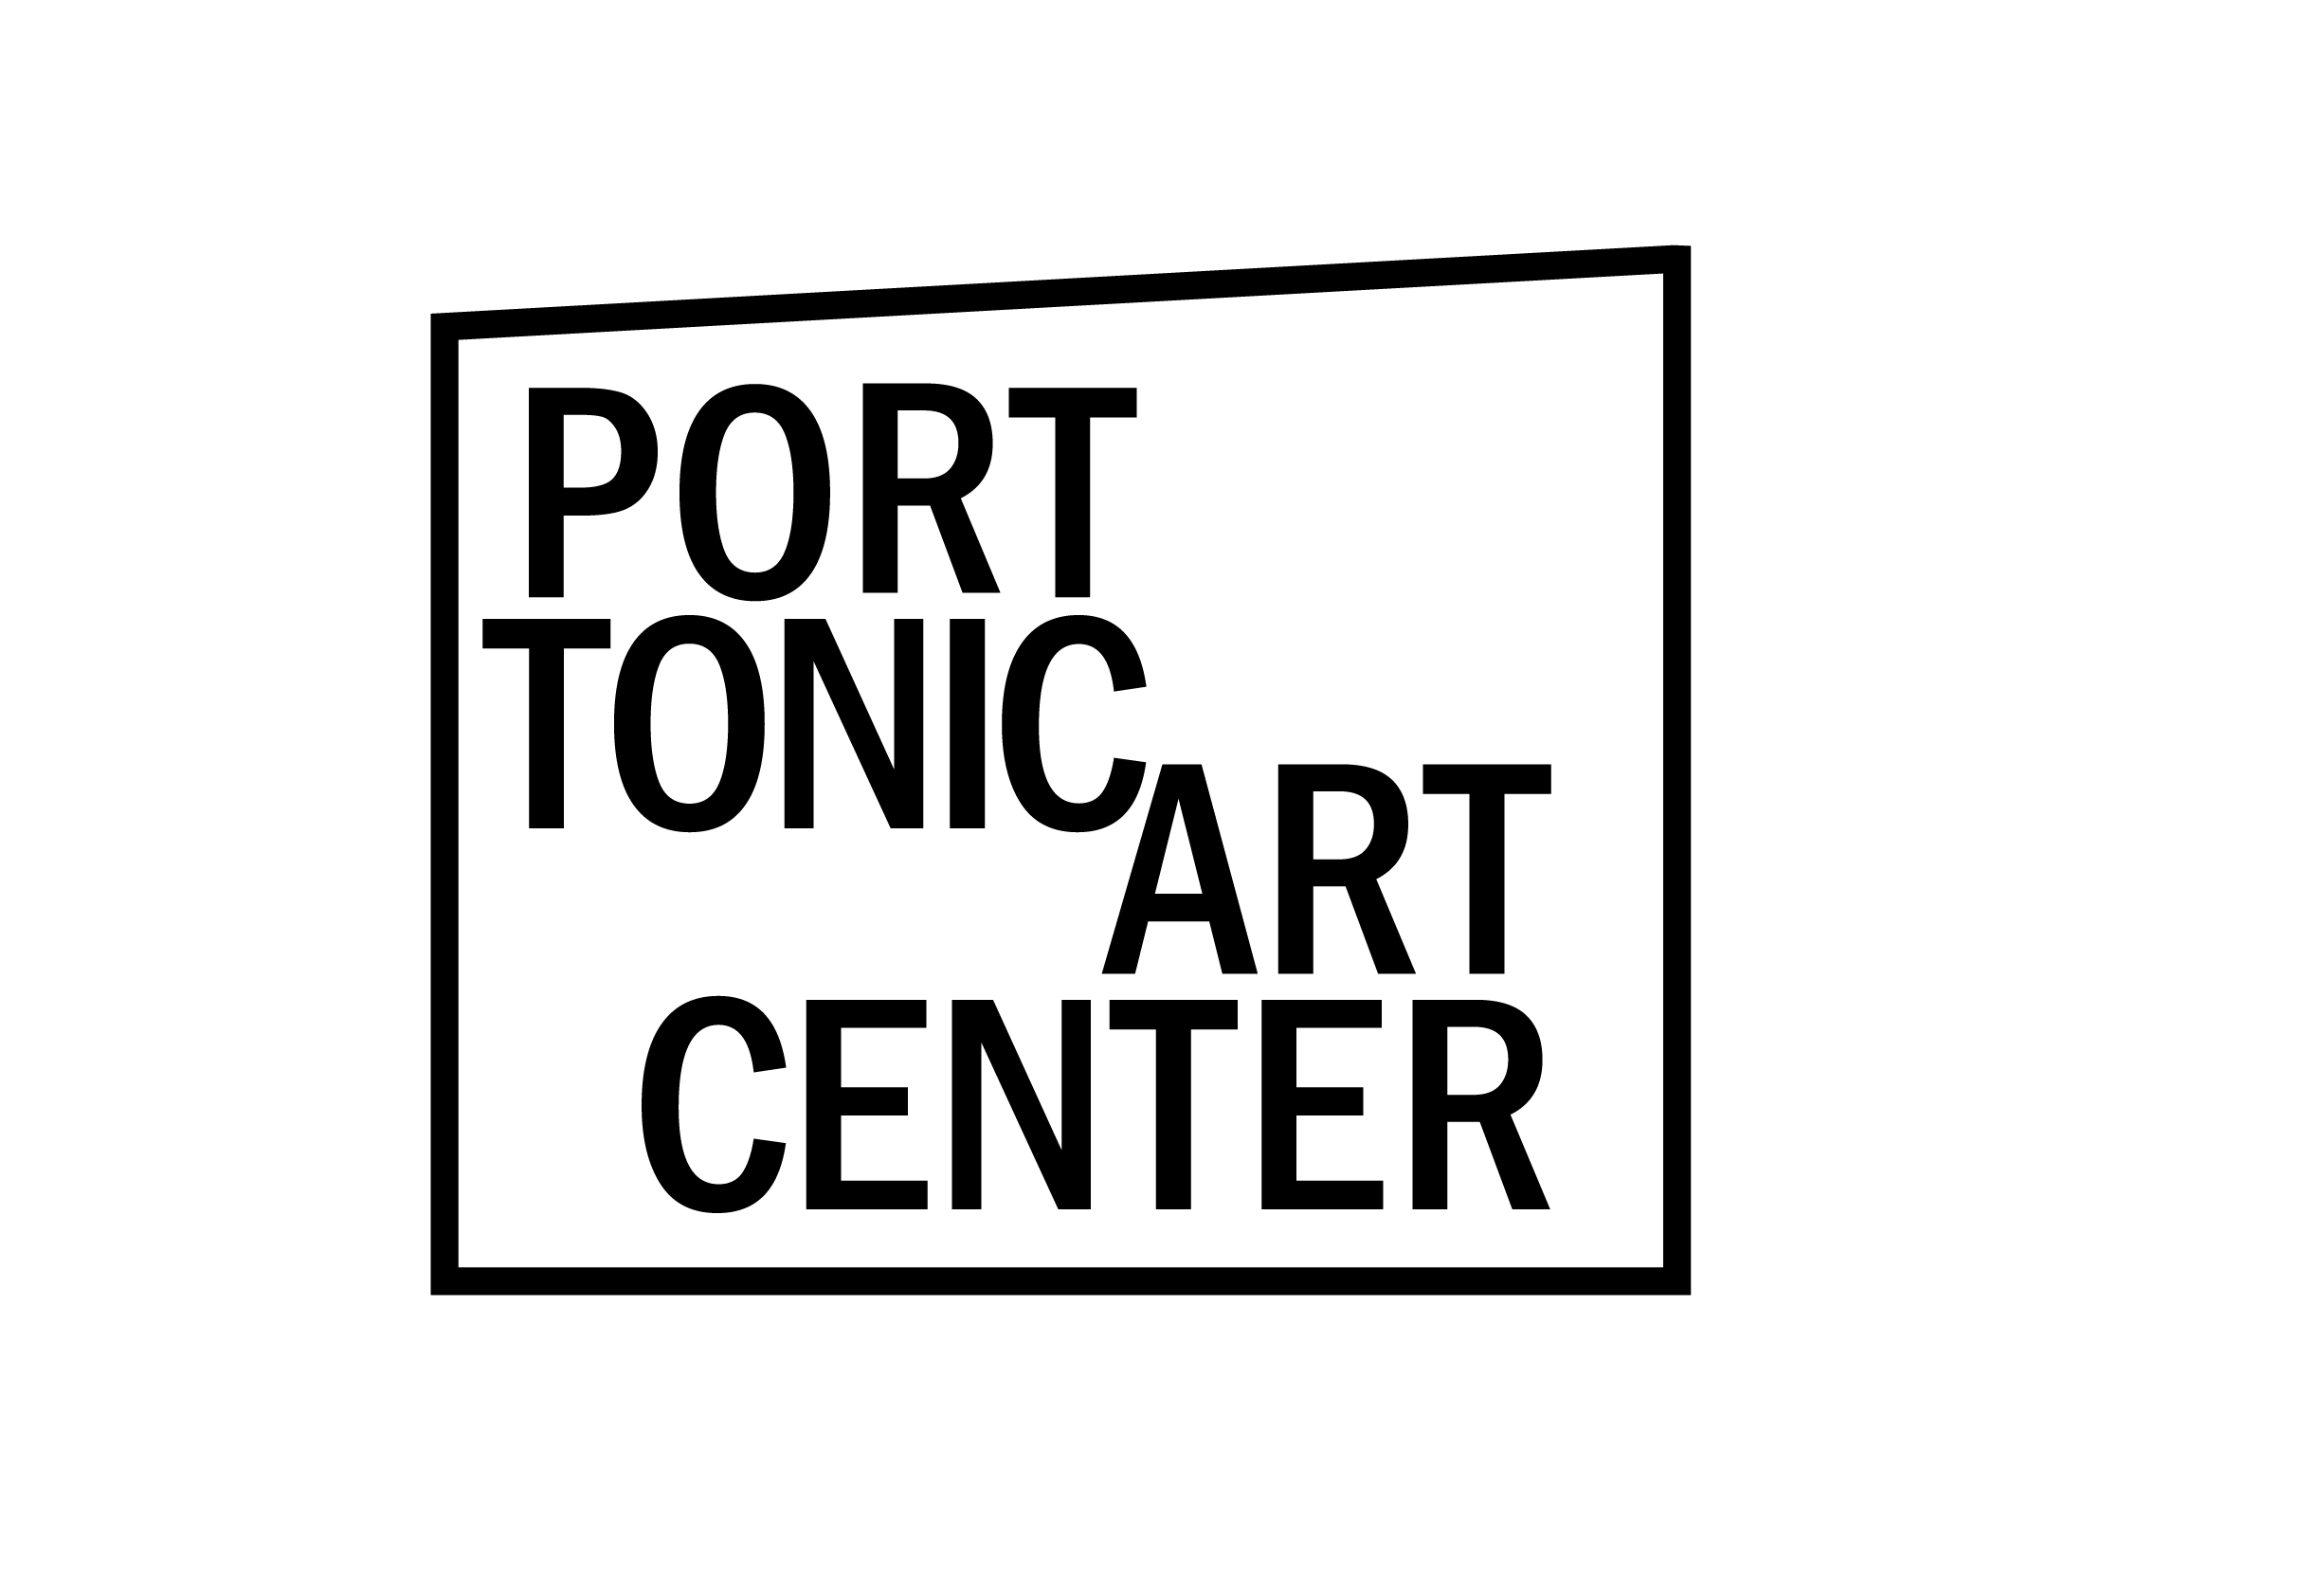 Port Tonic Art Center